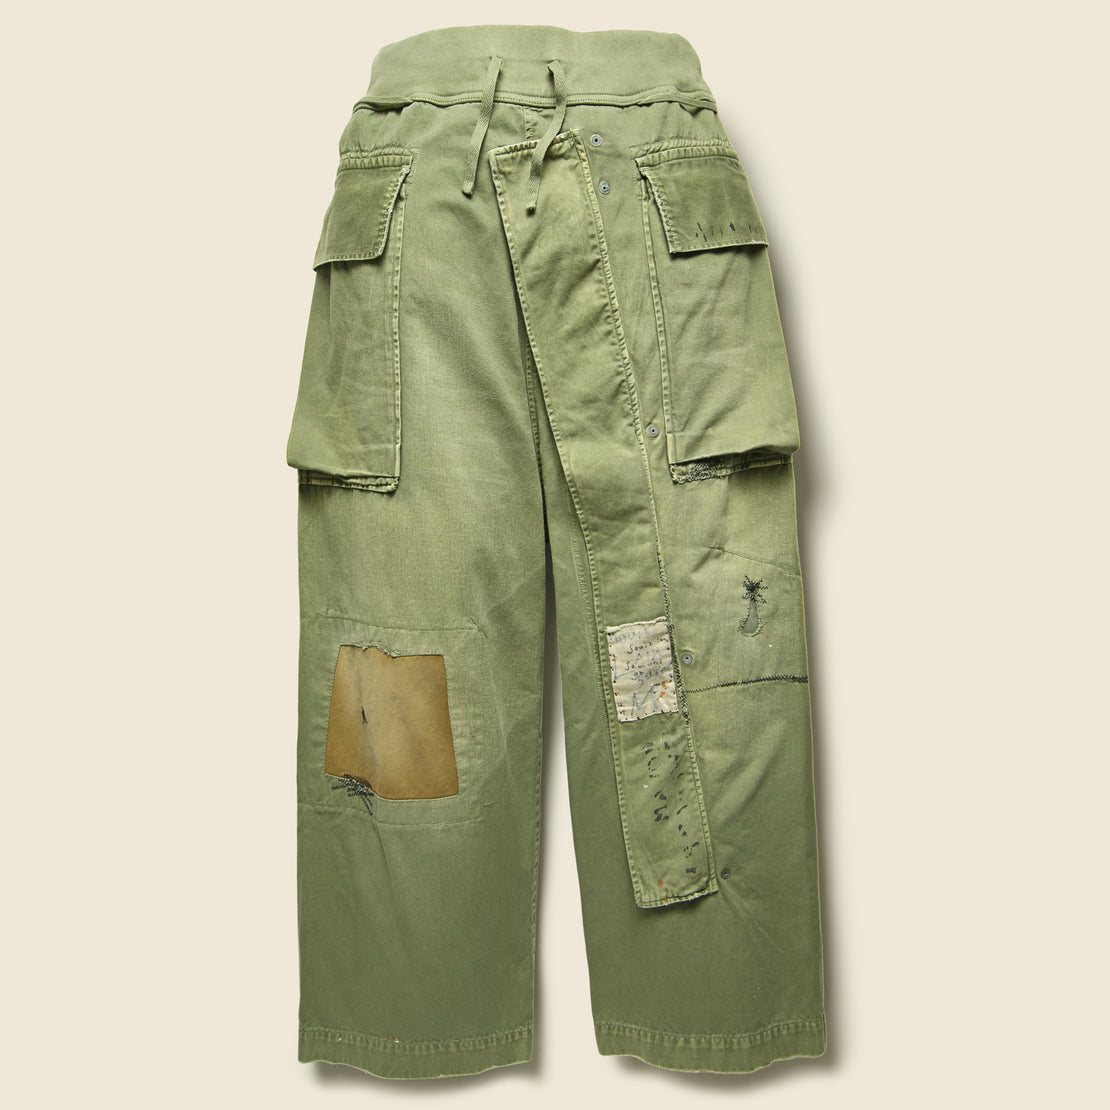 Katsuragi Sleeper Cargo Pants - Khaki